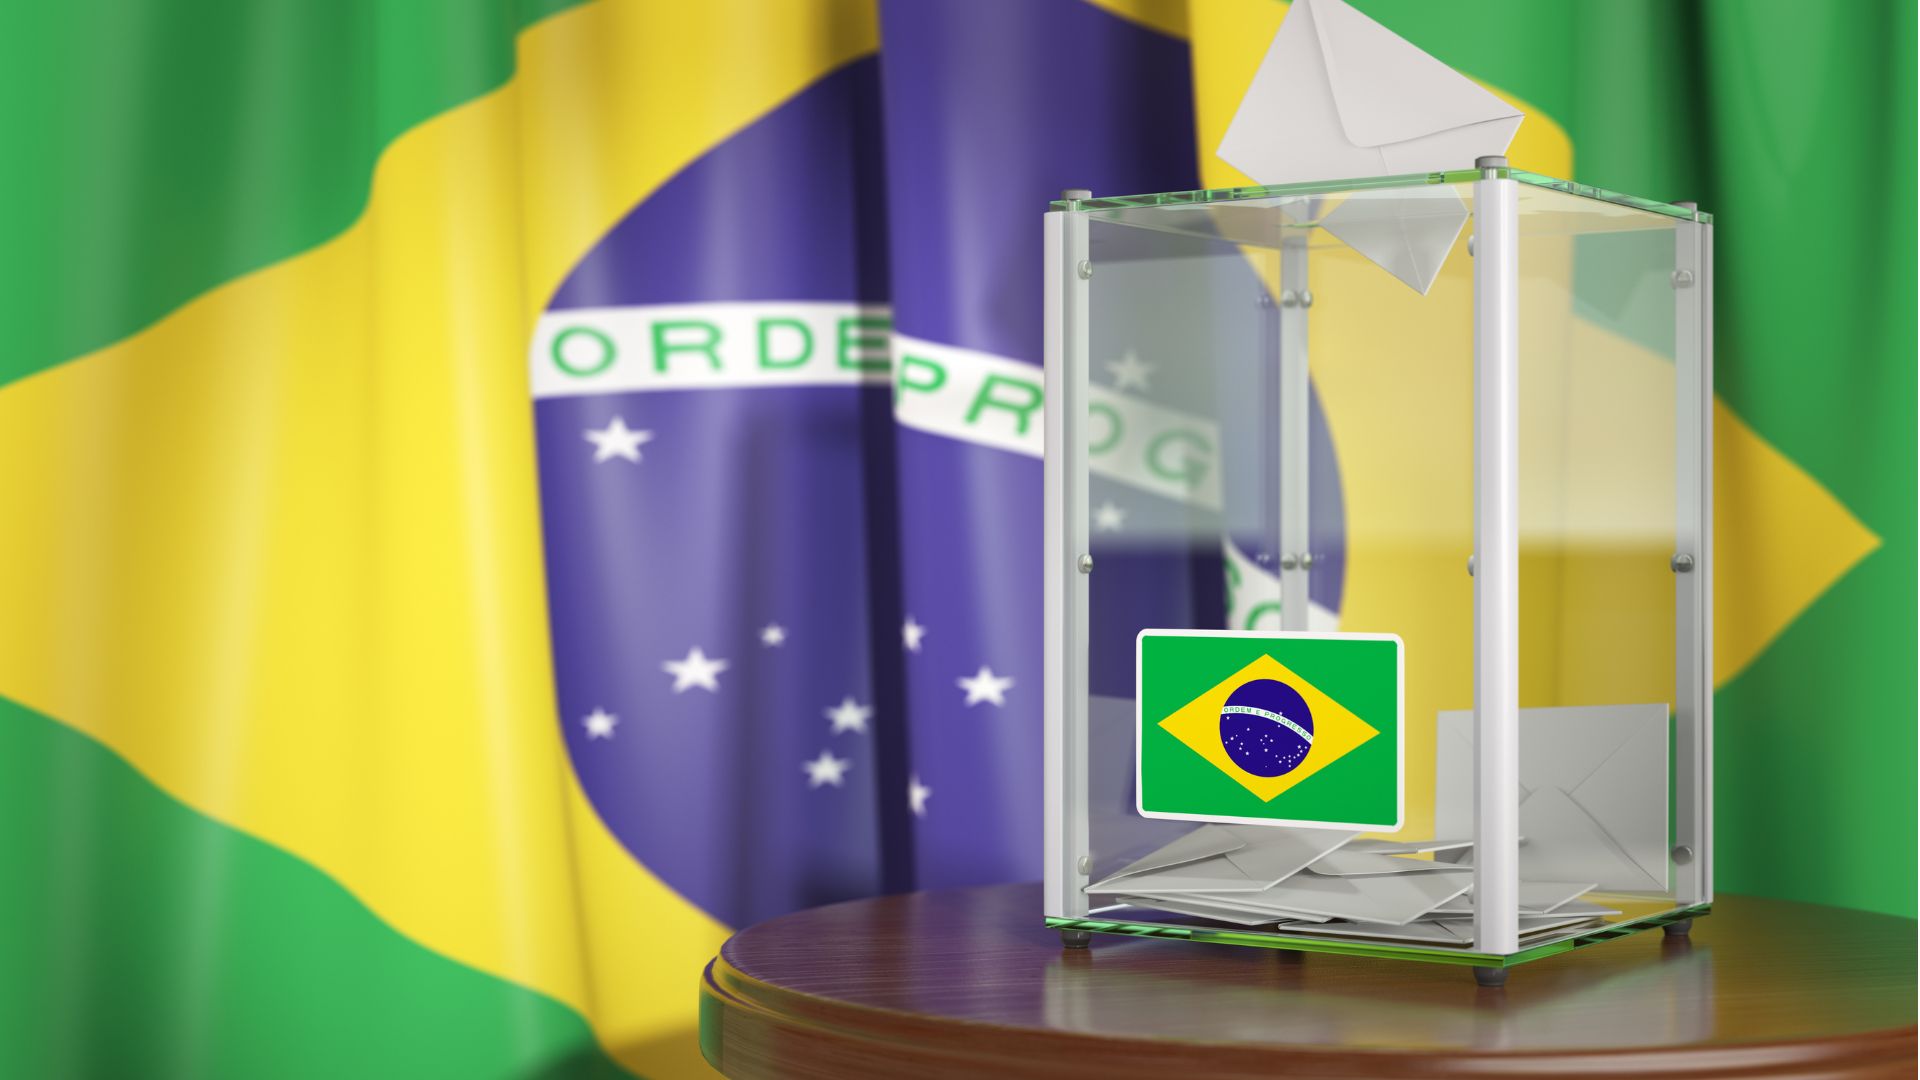 FranceInfo, Français du monde : “Au Brésil, présidentielle sous tension ce dimanche“